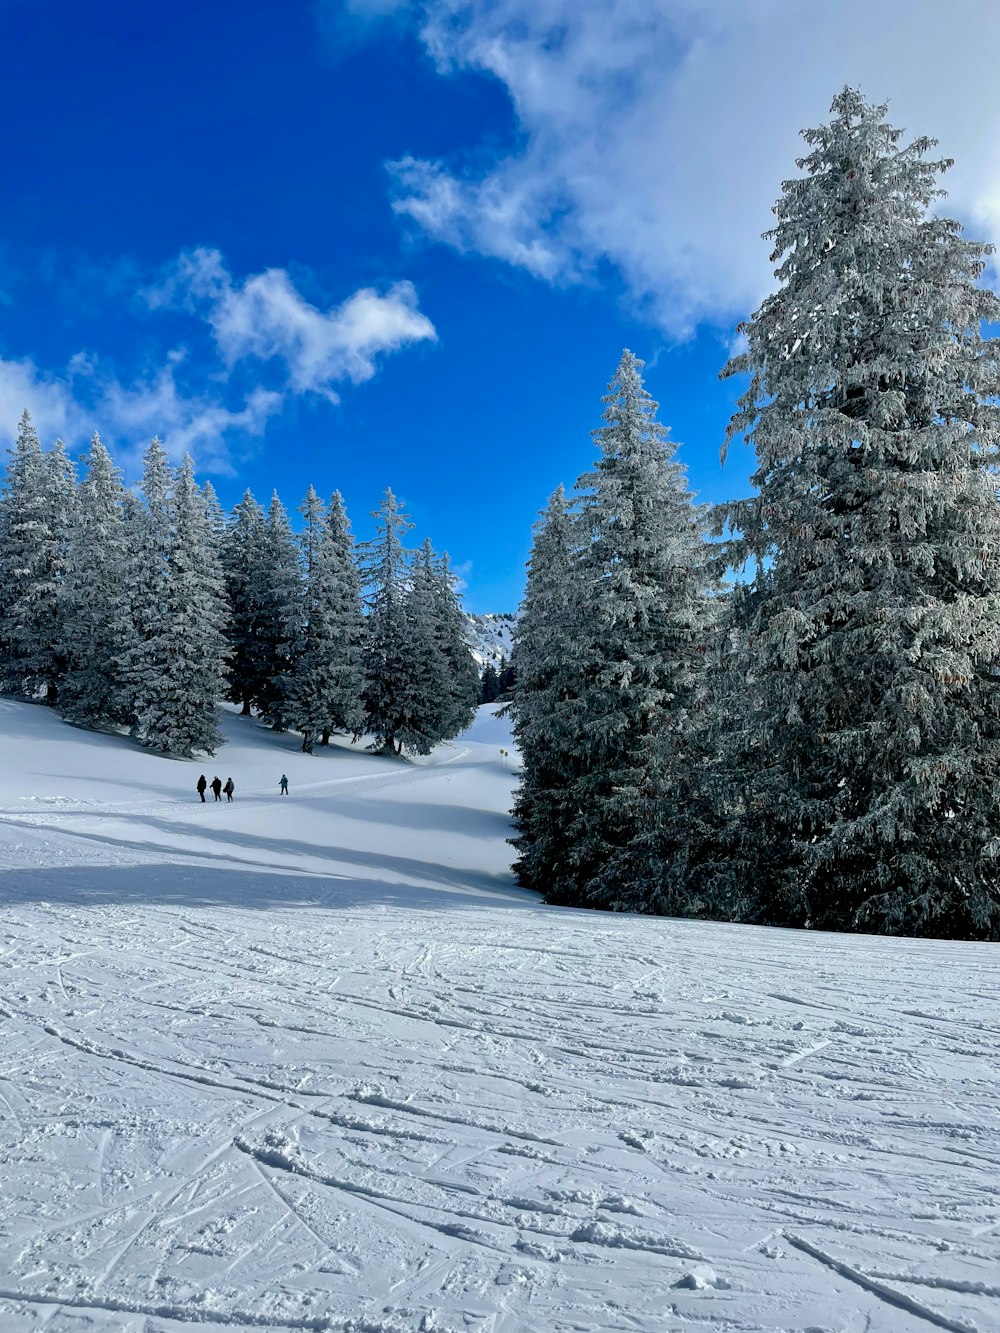 Un grupo de personas esquiando por una pista nevada